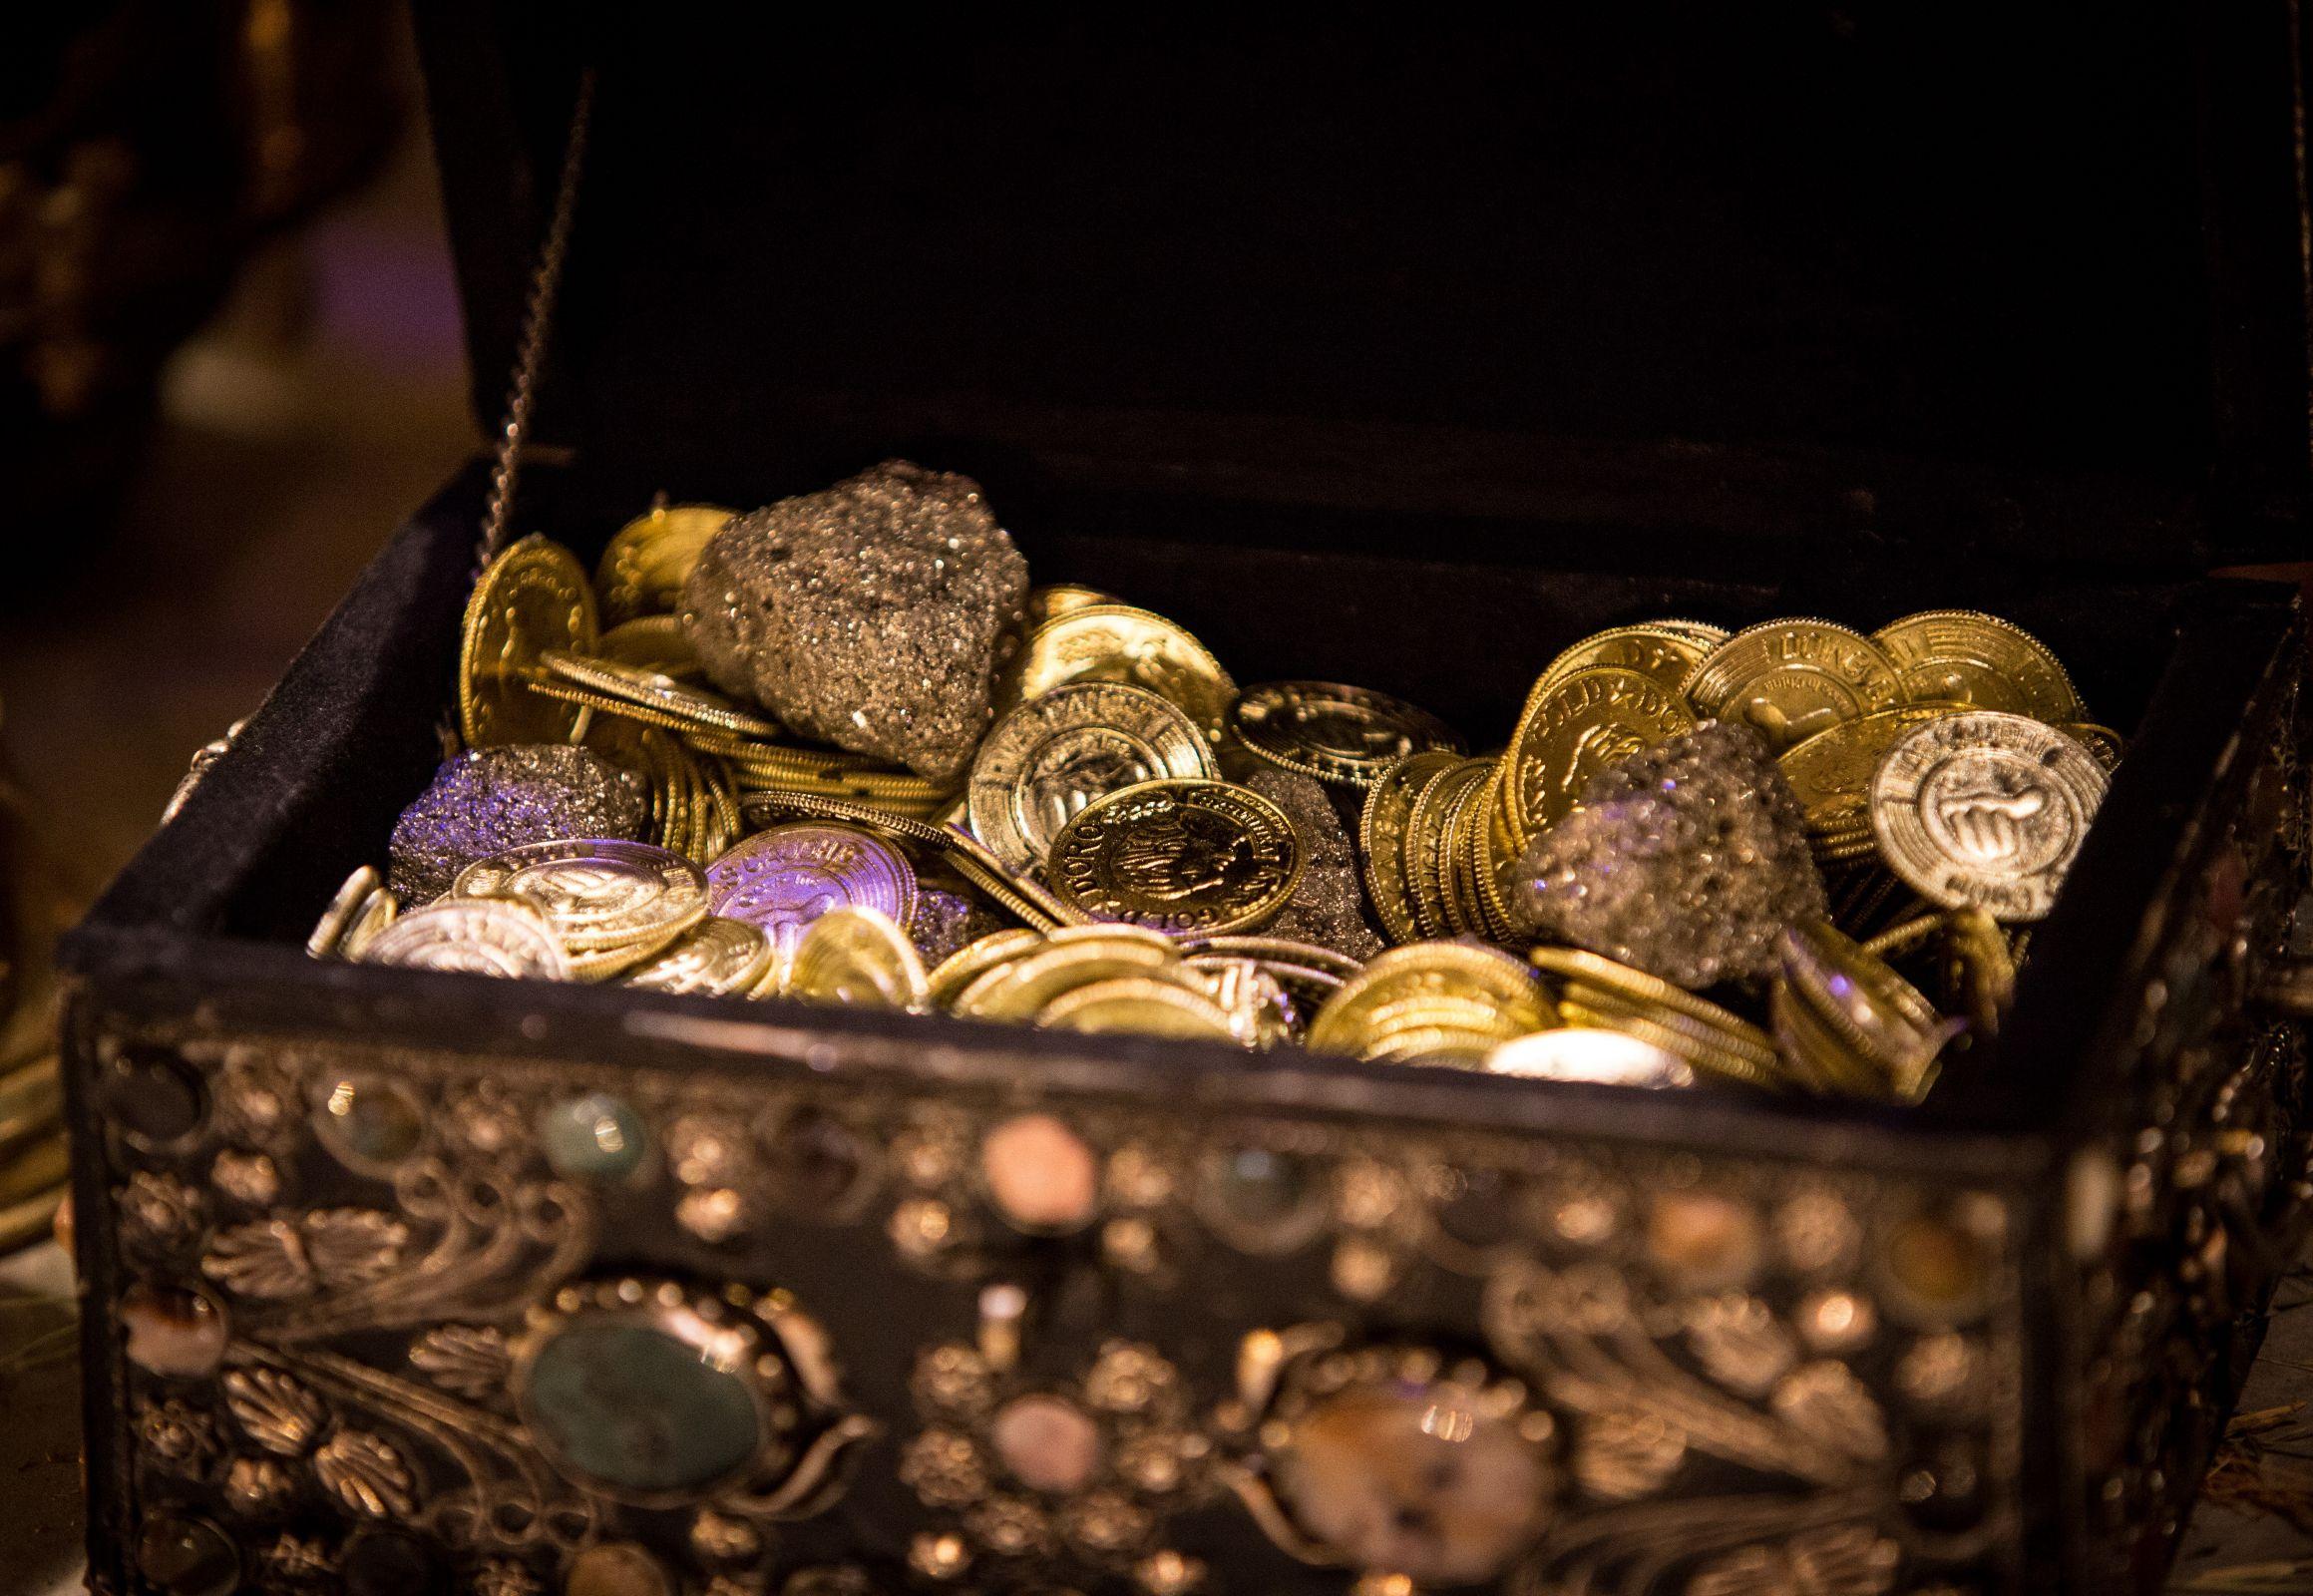 تصویر اسرارآمیز سکه های درون صندوقچه با طرح های باستانی فانتزی در فیلم